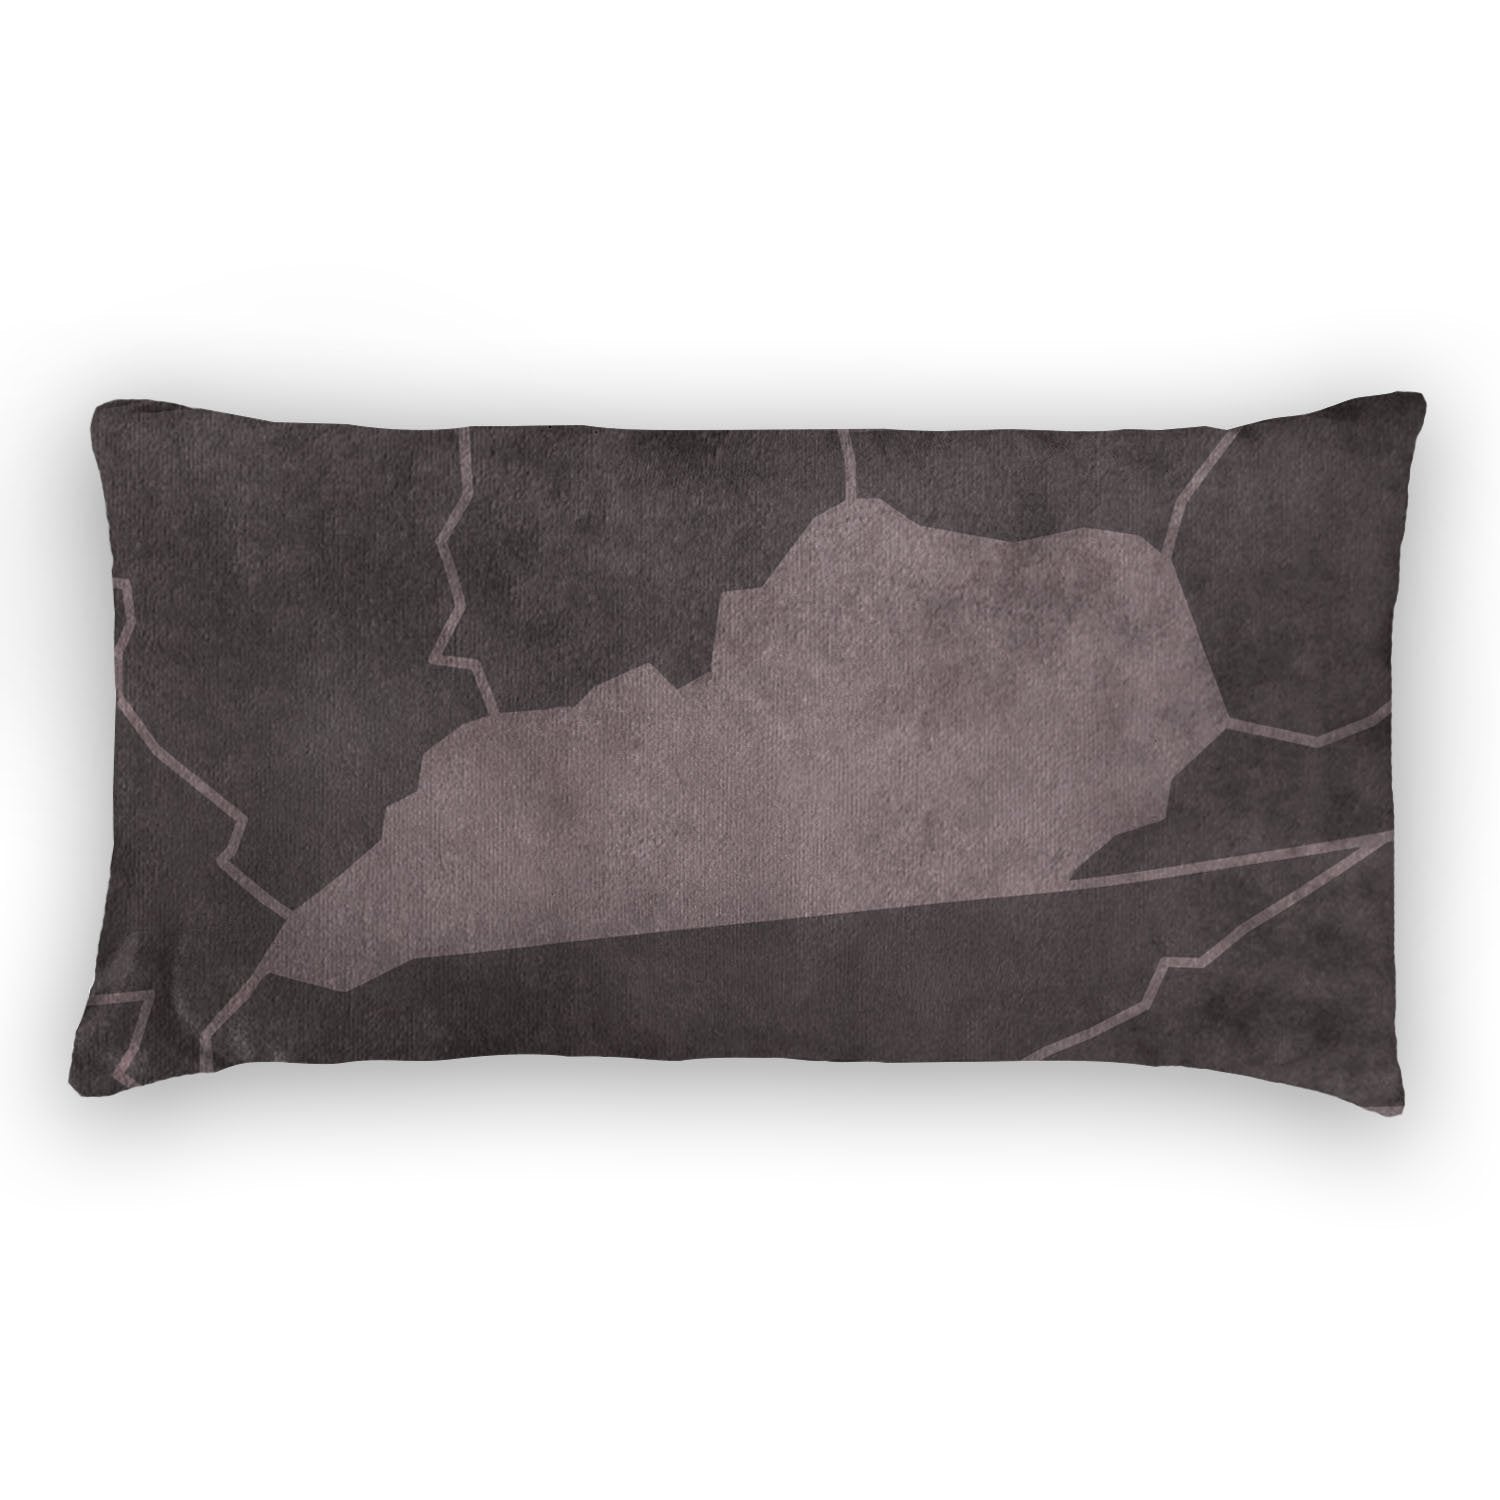 Kentucky Lumbar Pillow - Velvet -  - Knotty Tie Co.